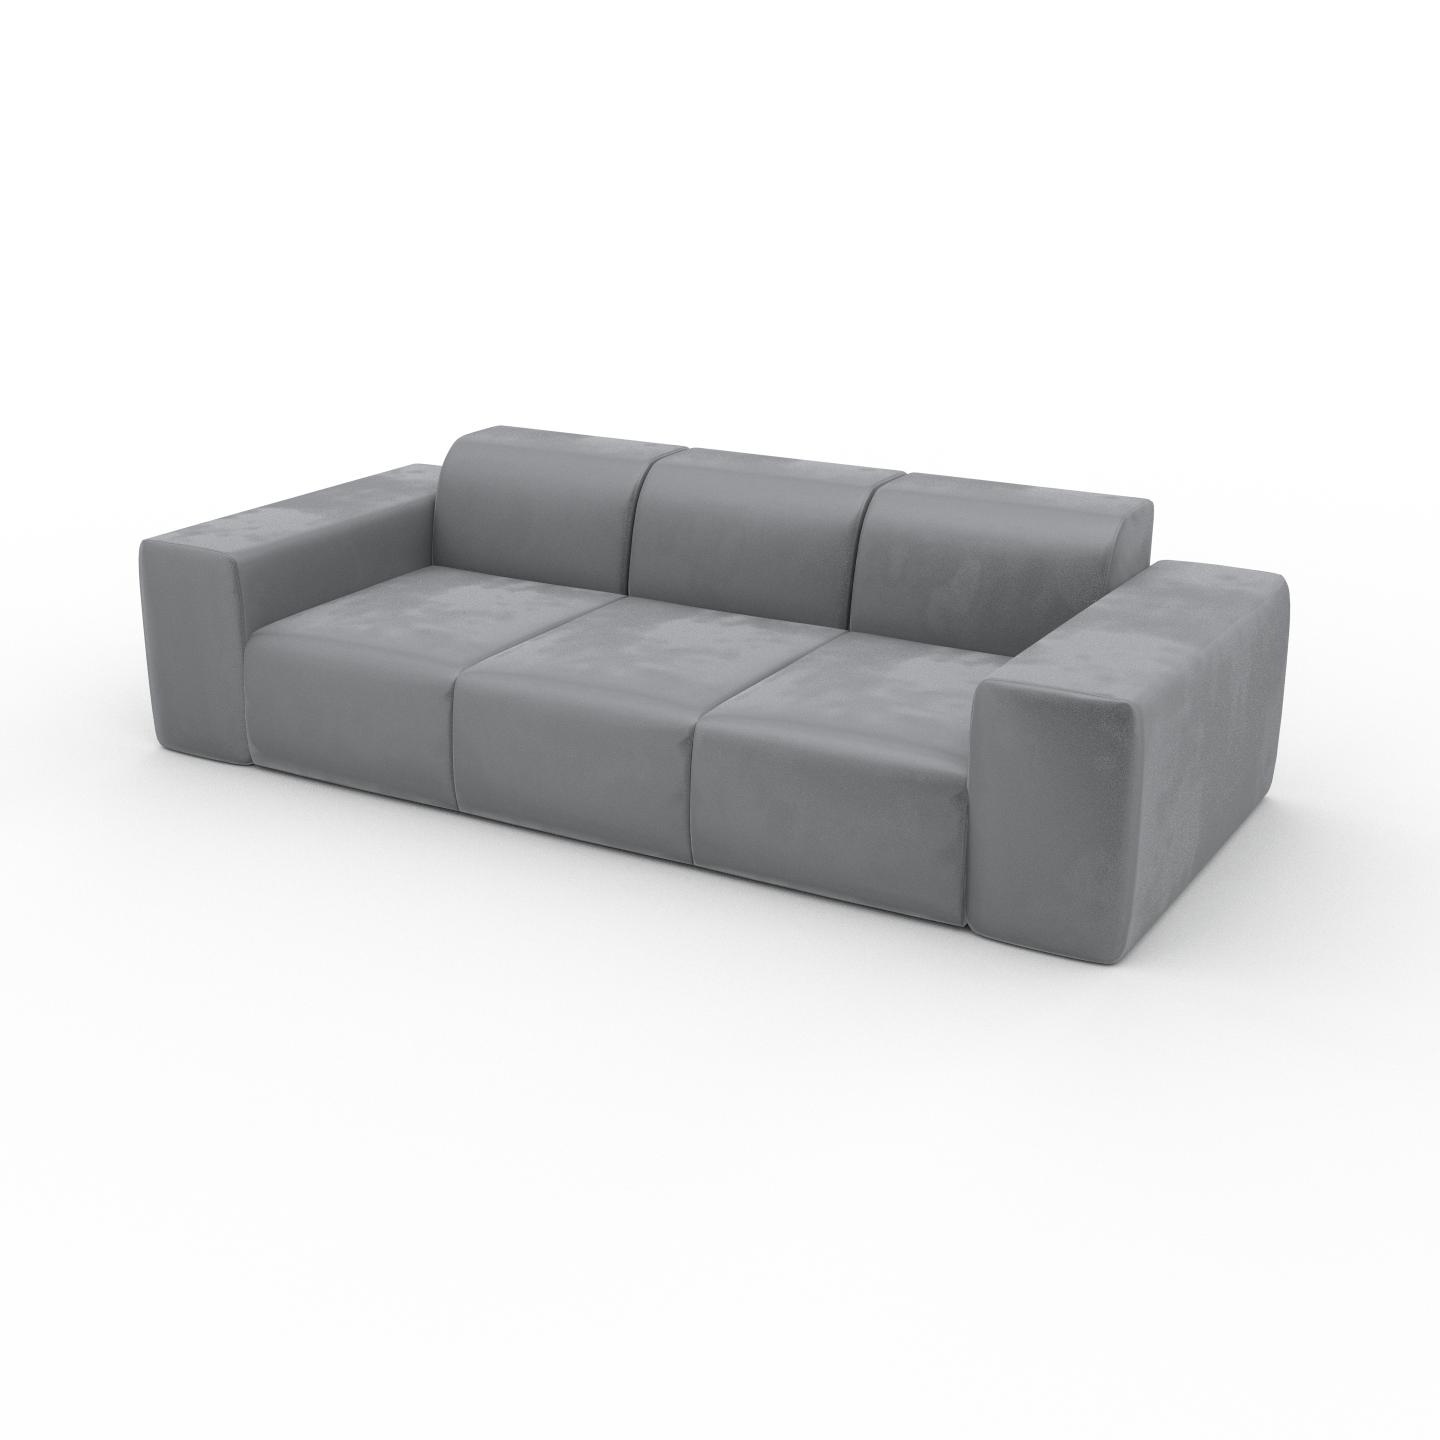 MYCS Sofa Samt Sandgrau - Moderne Designer-Couch: Hochwertige Qualität, einzigartiges Design - 246 x 72 x 107 cm, Komplett anpassbar